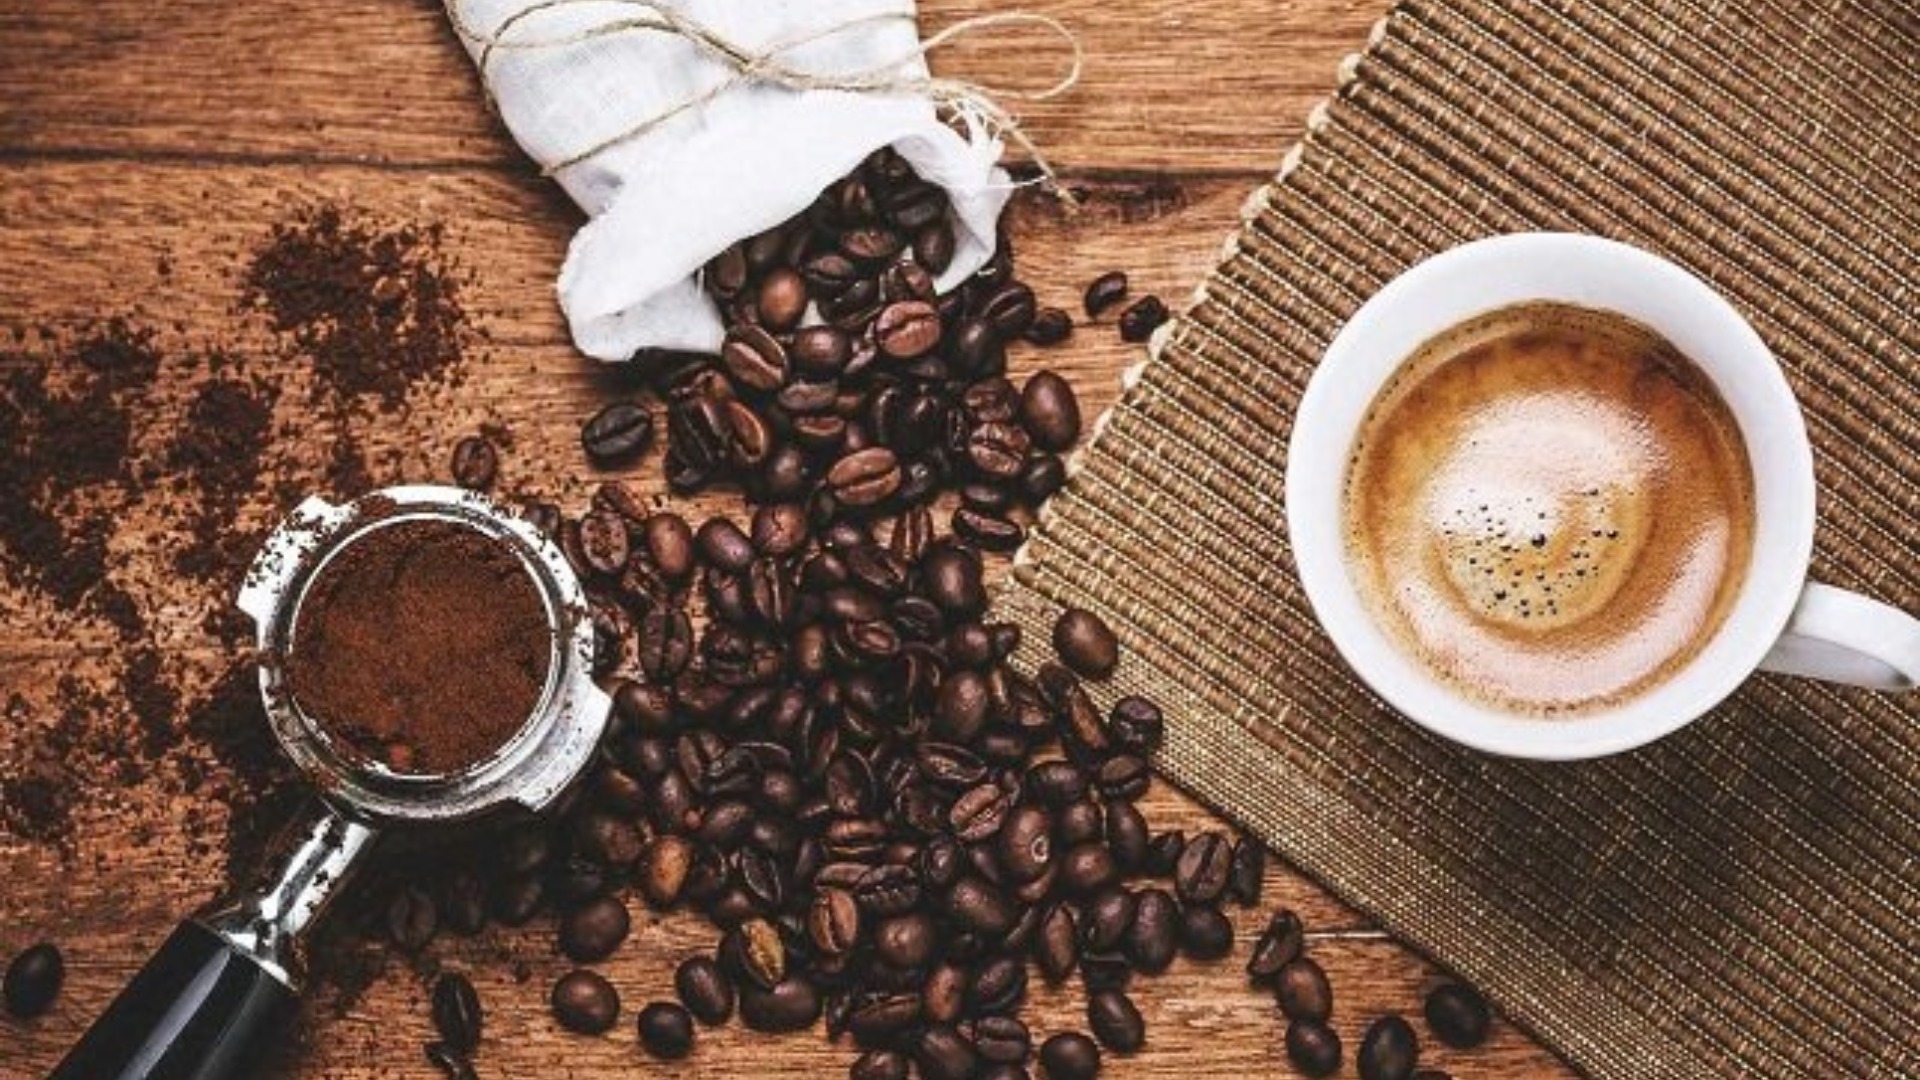 اسماء قهوة بدون كافيين في مصر